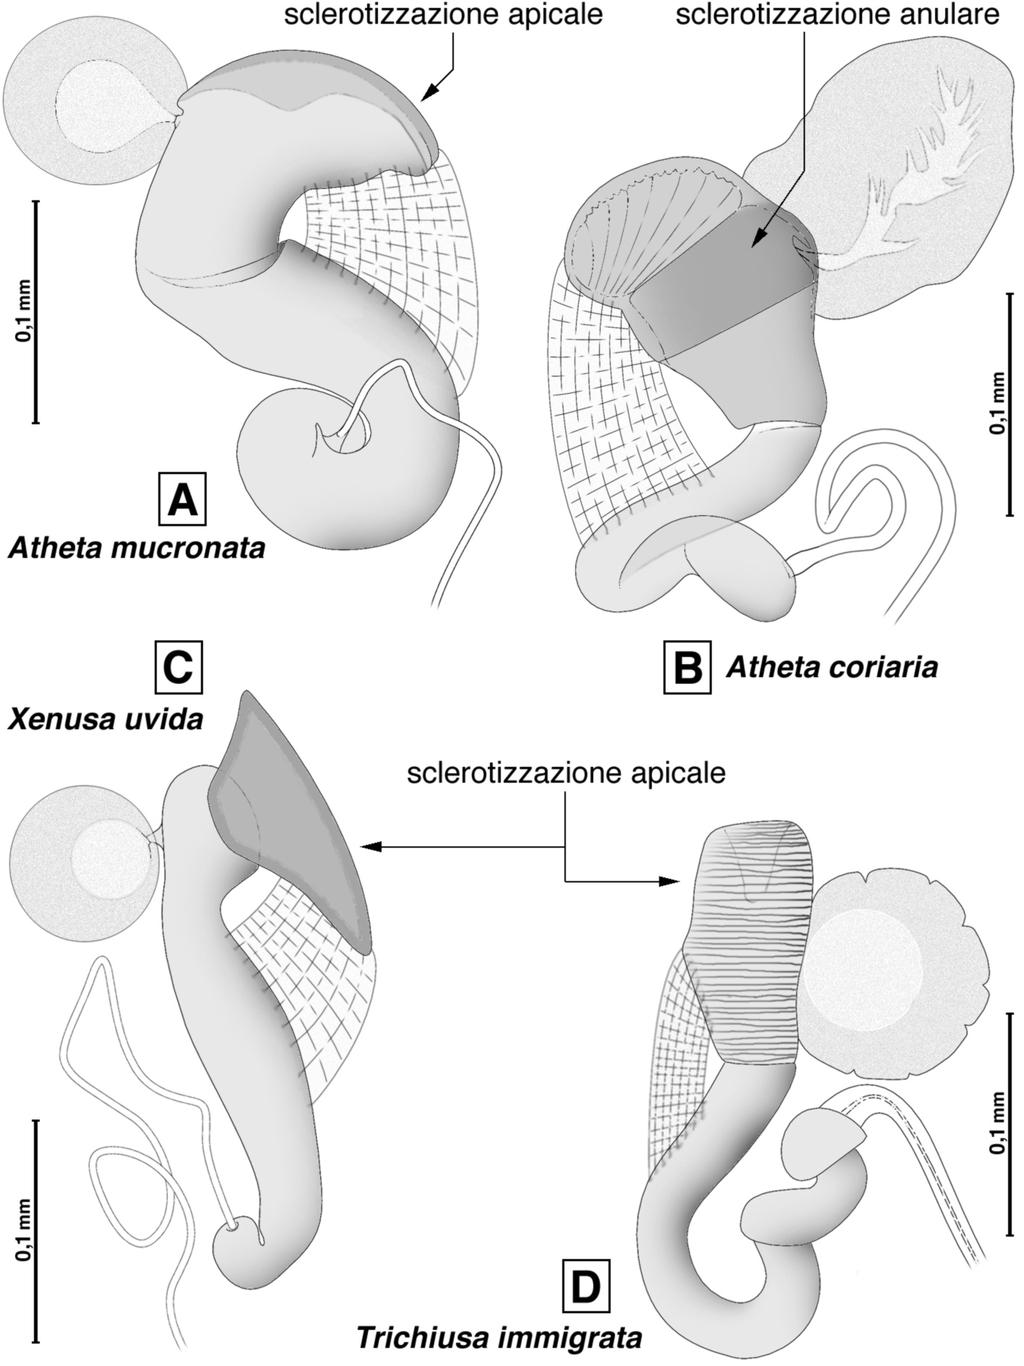 Fig. 3 - Spermateca